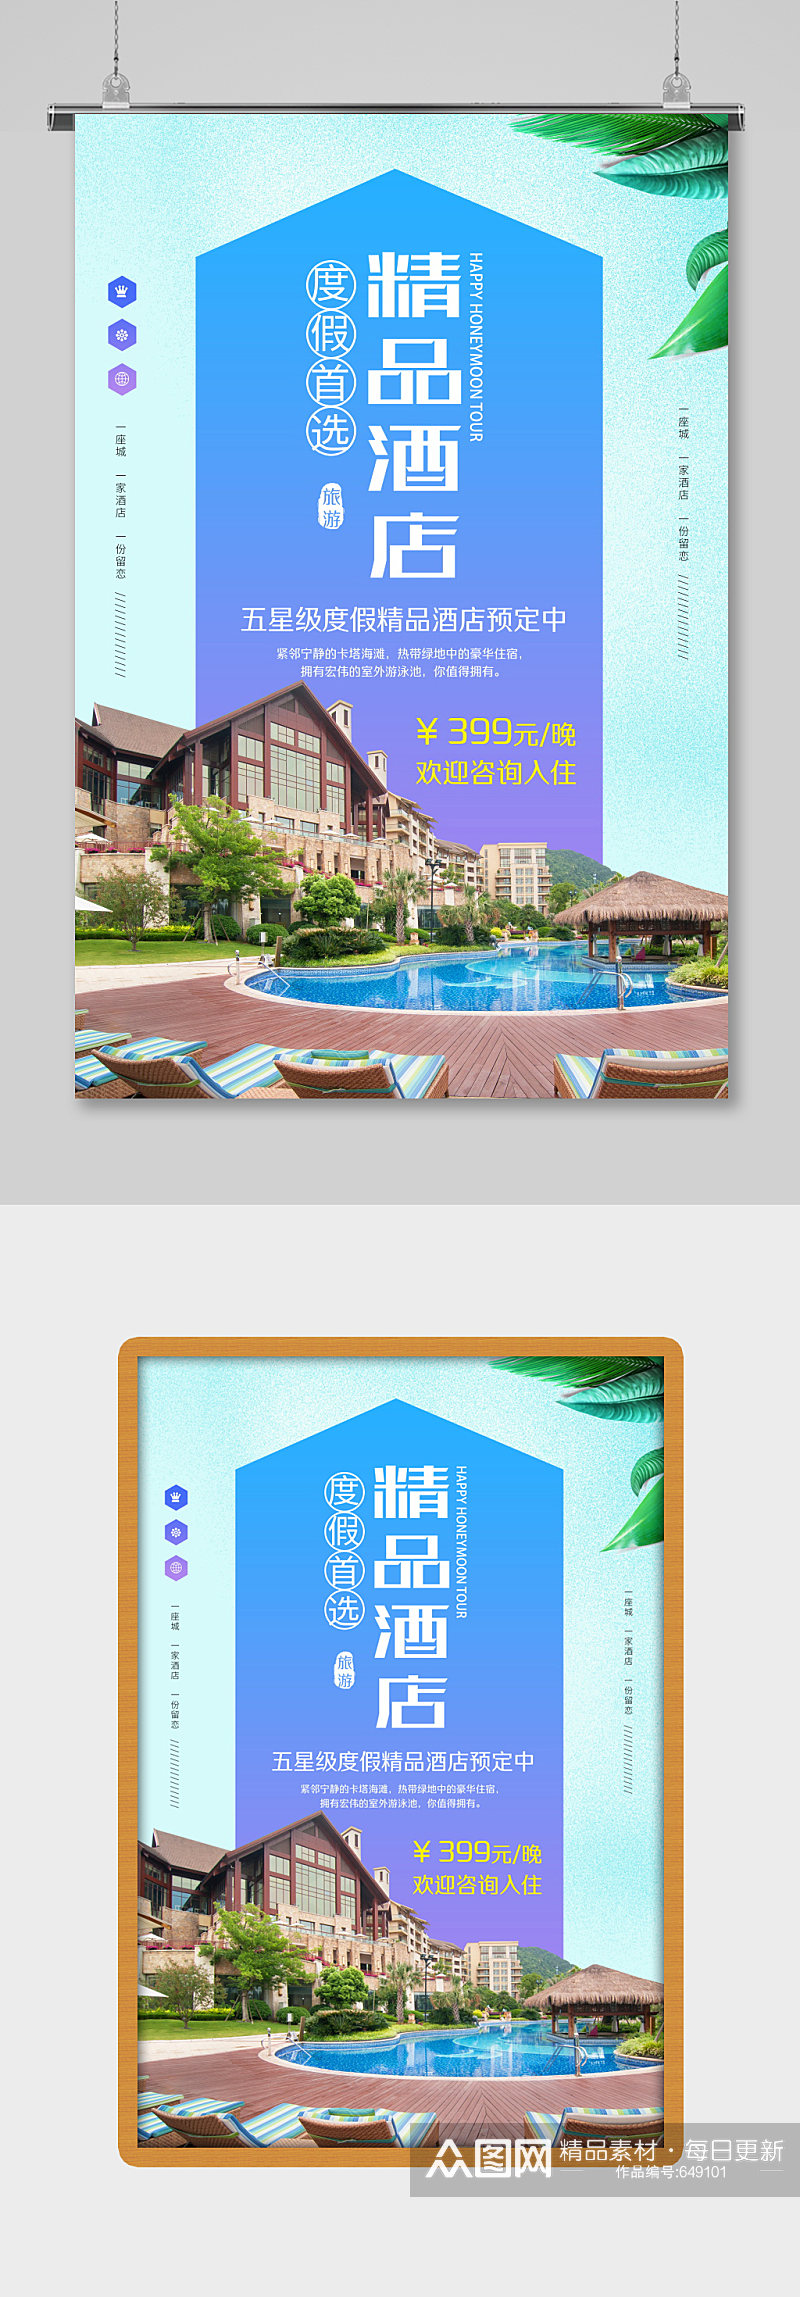 精品酒店蓝色促销宣传海报素材